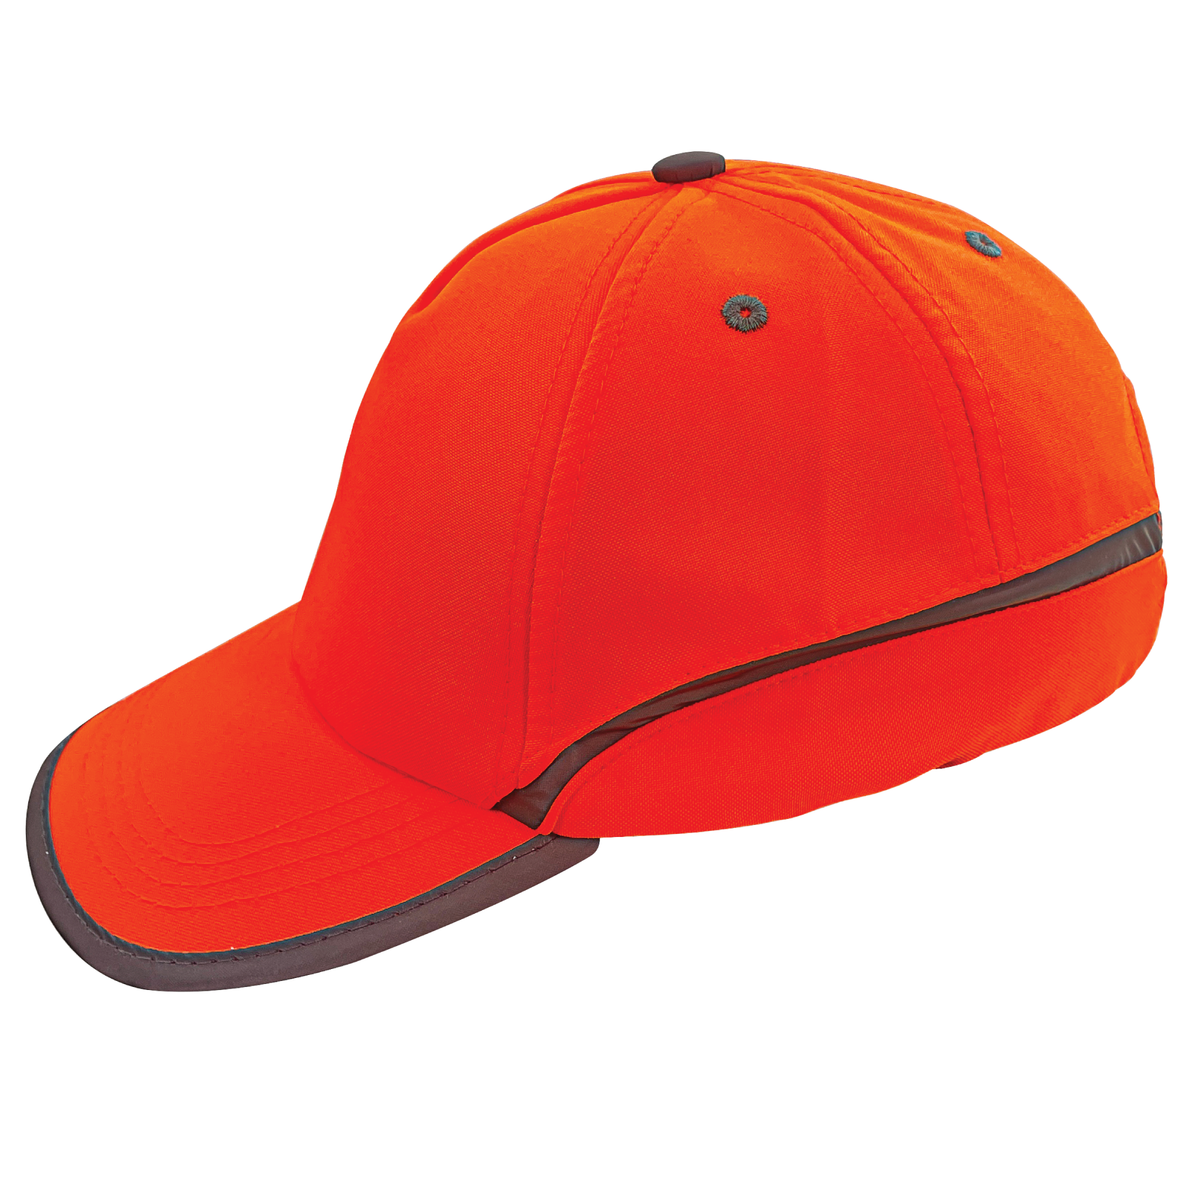 Hi-Visibility Cap - Orange